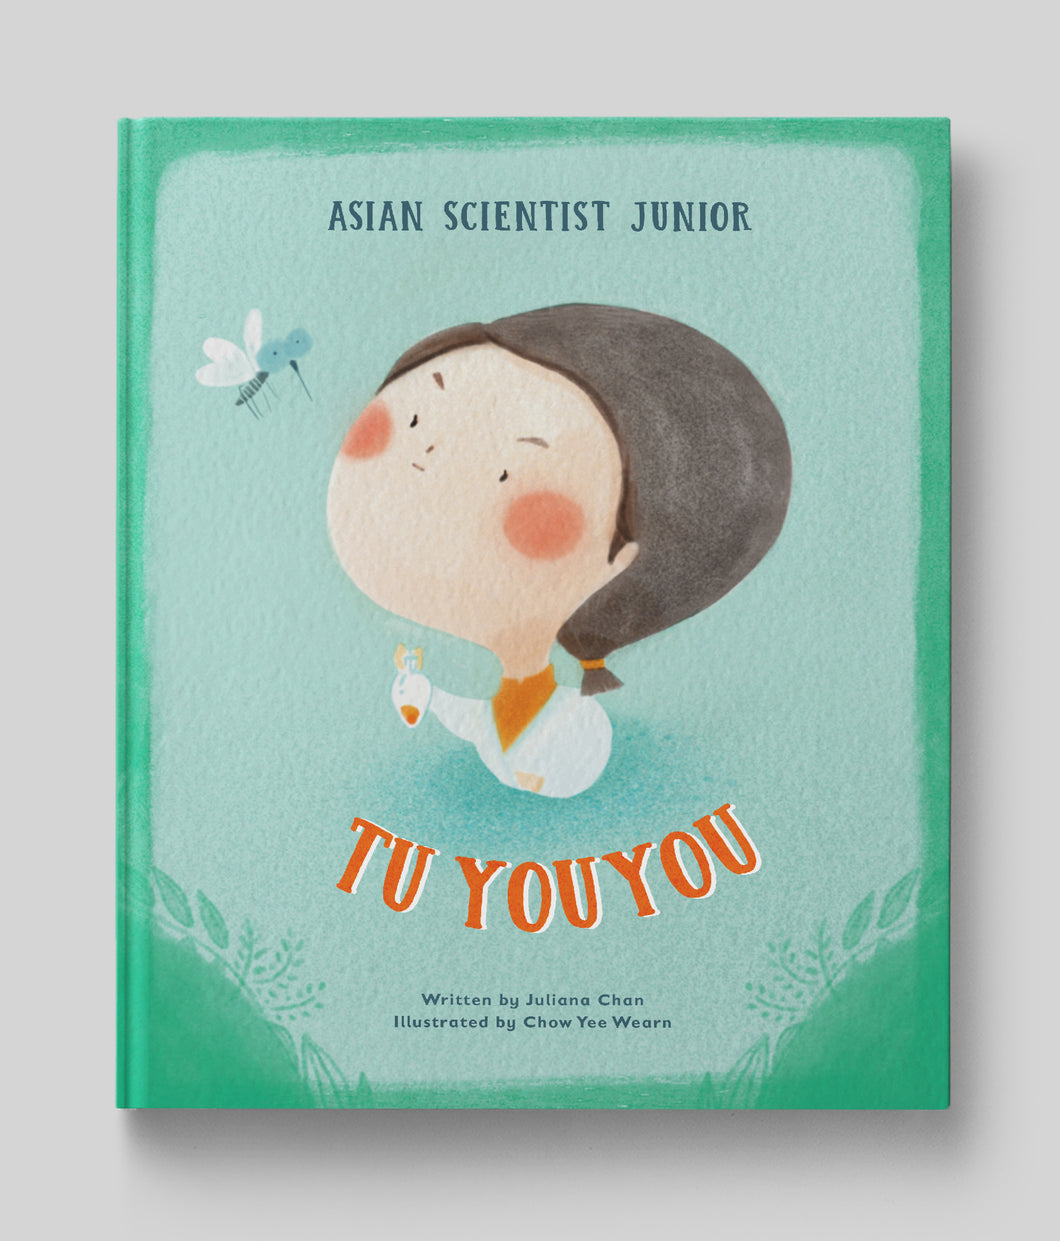 Asian Scientist Junior: Tu Youyou